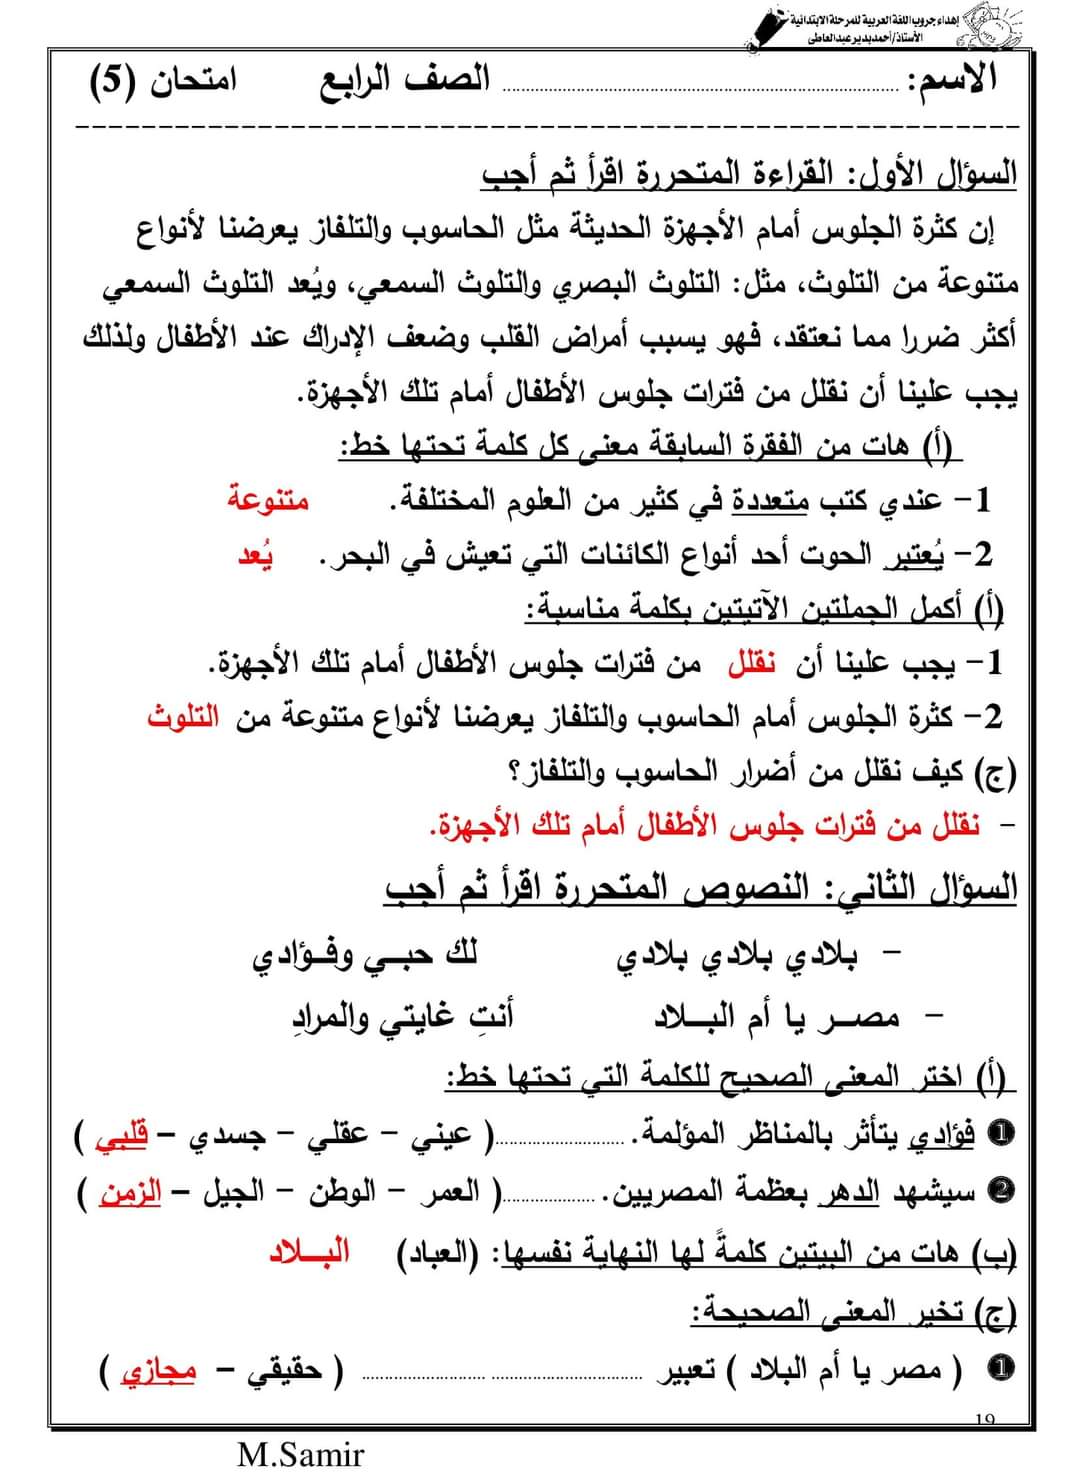 تحميل اختبارات لغة عربية رابعة ابتدائي لمقرر مارس 2022 - امتحانات عربي رابعة نظام جديد